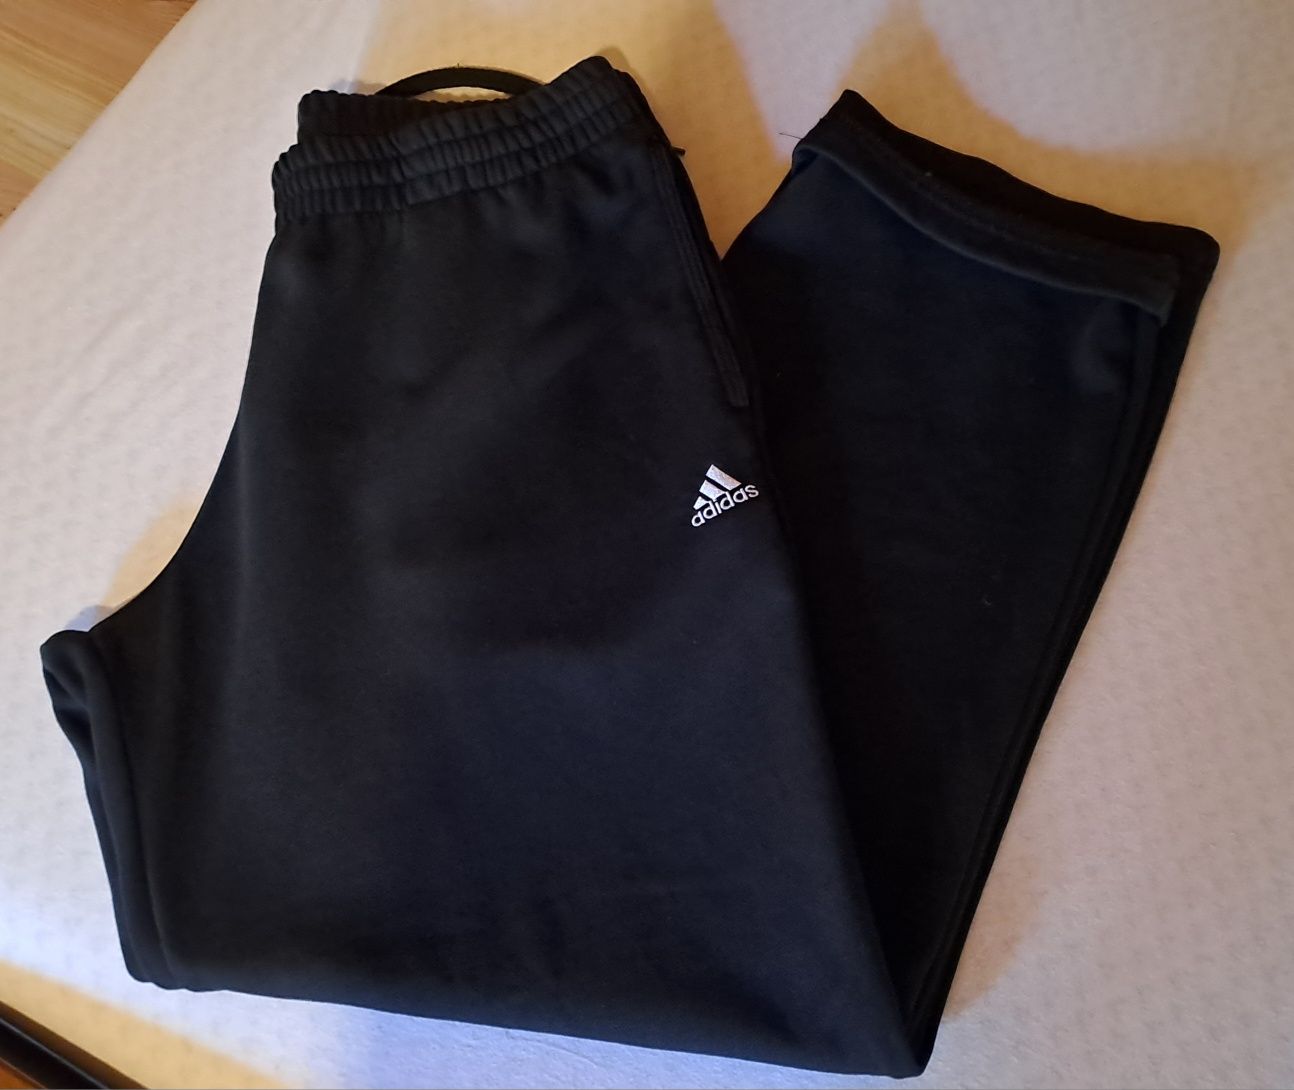 Adidas spodnie ciemno geanatowe, stan bdb, jak nowe, r:M/S.